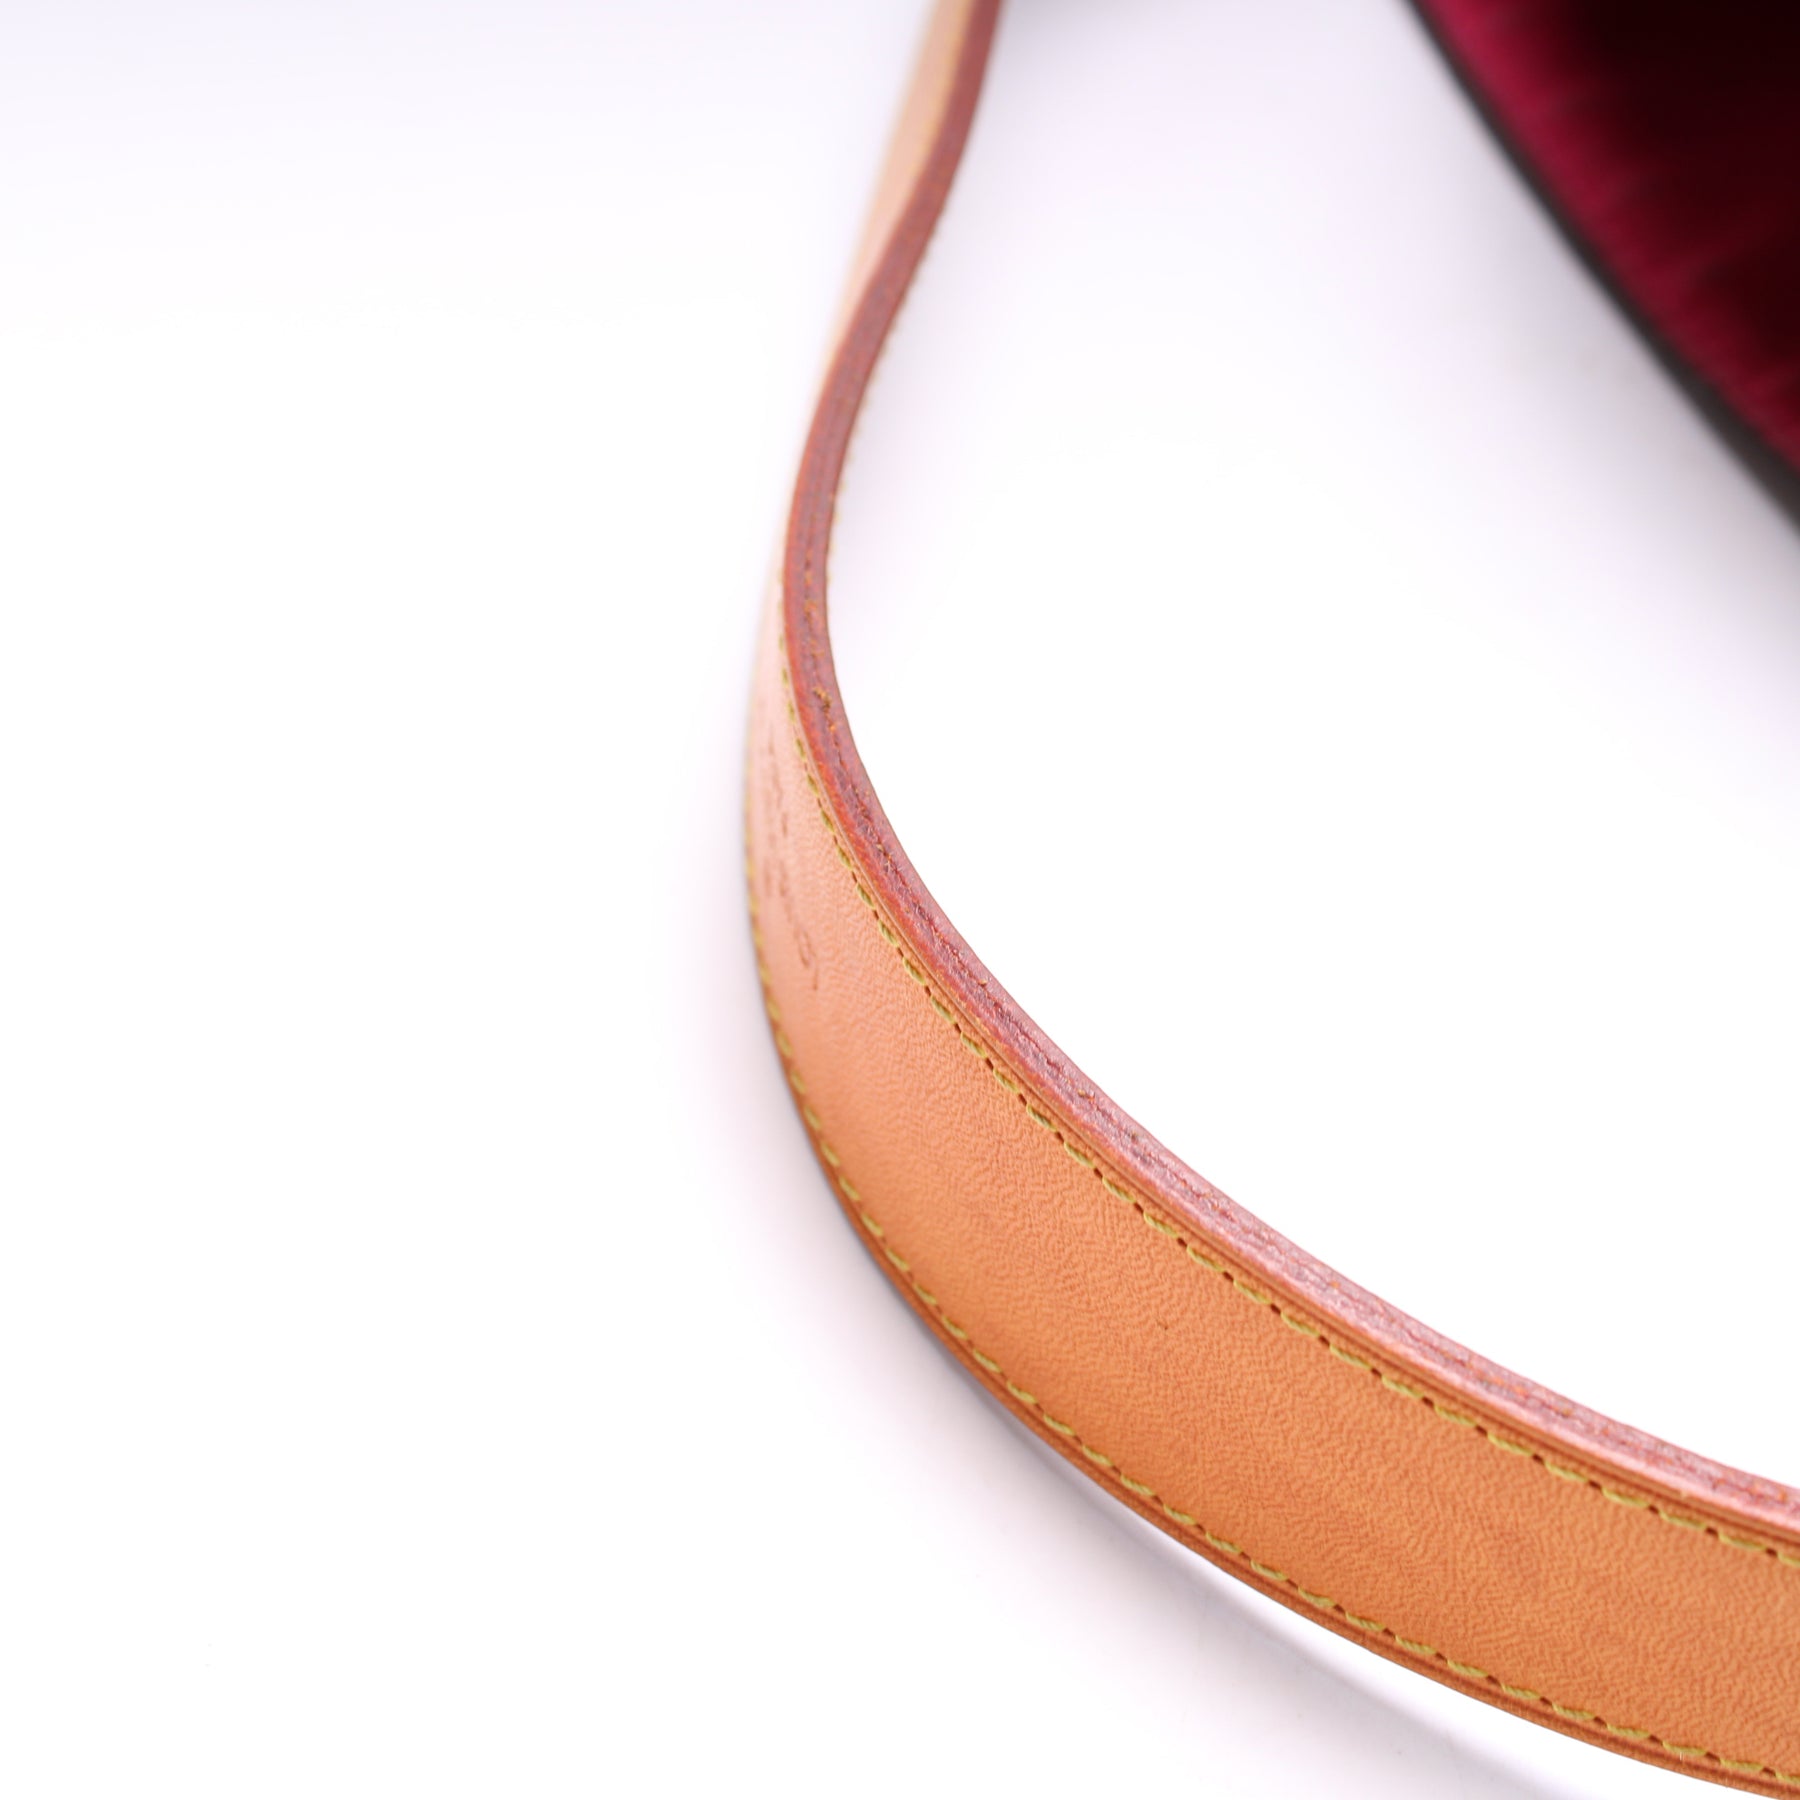 Graceful MM Monogram – Keeks Designer Handbags